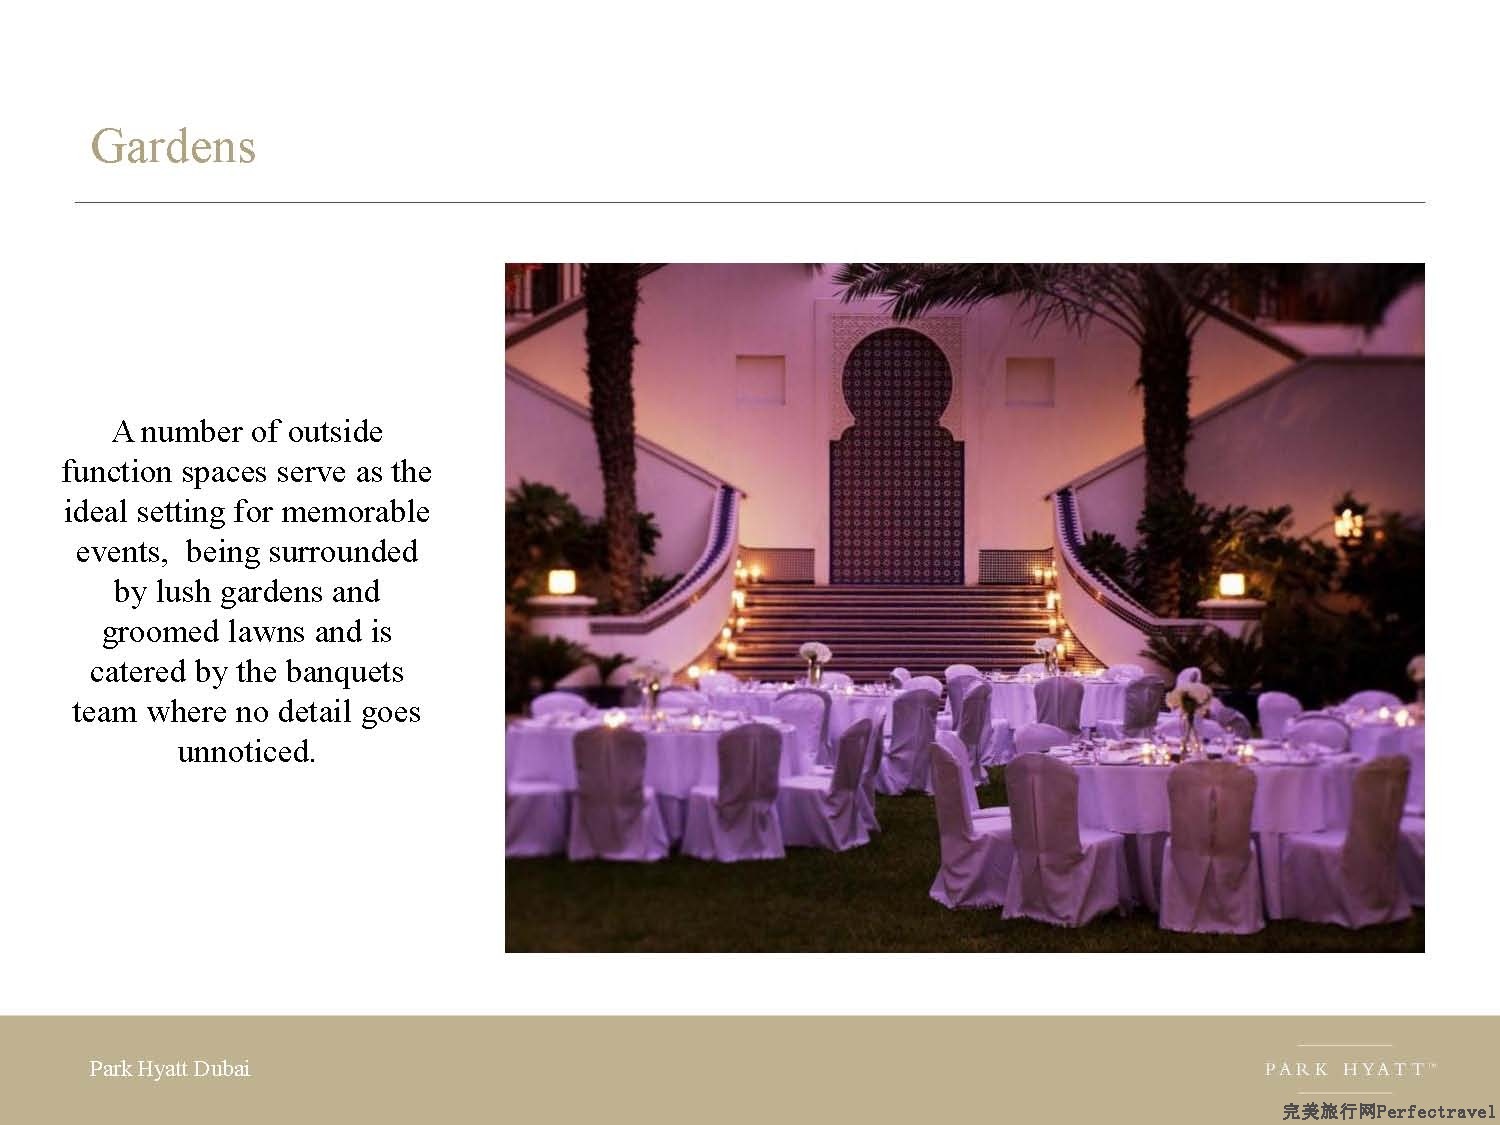 Park Hyatt Dubai presentation - 2013_Page_14.jpg